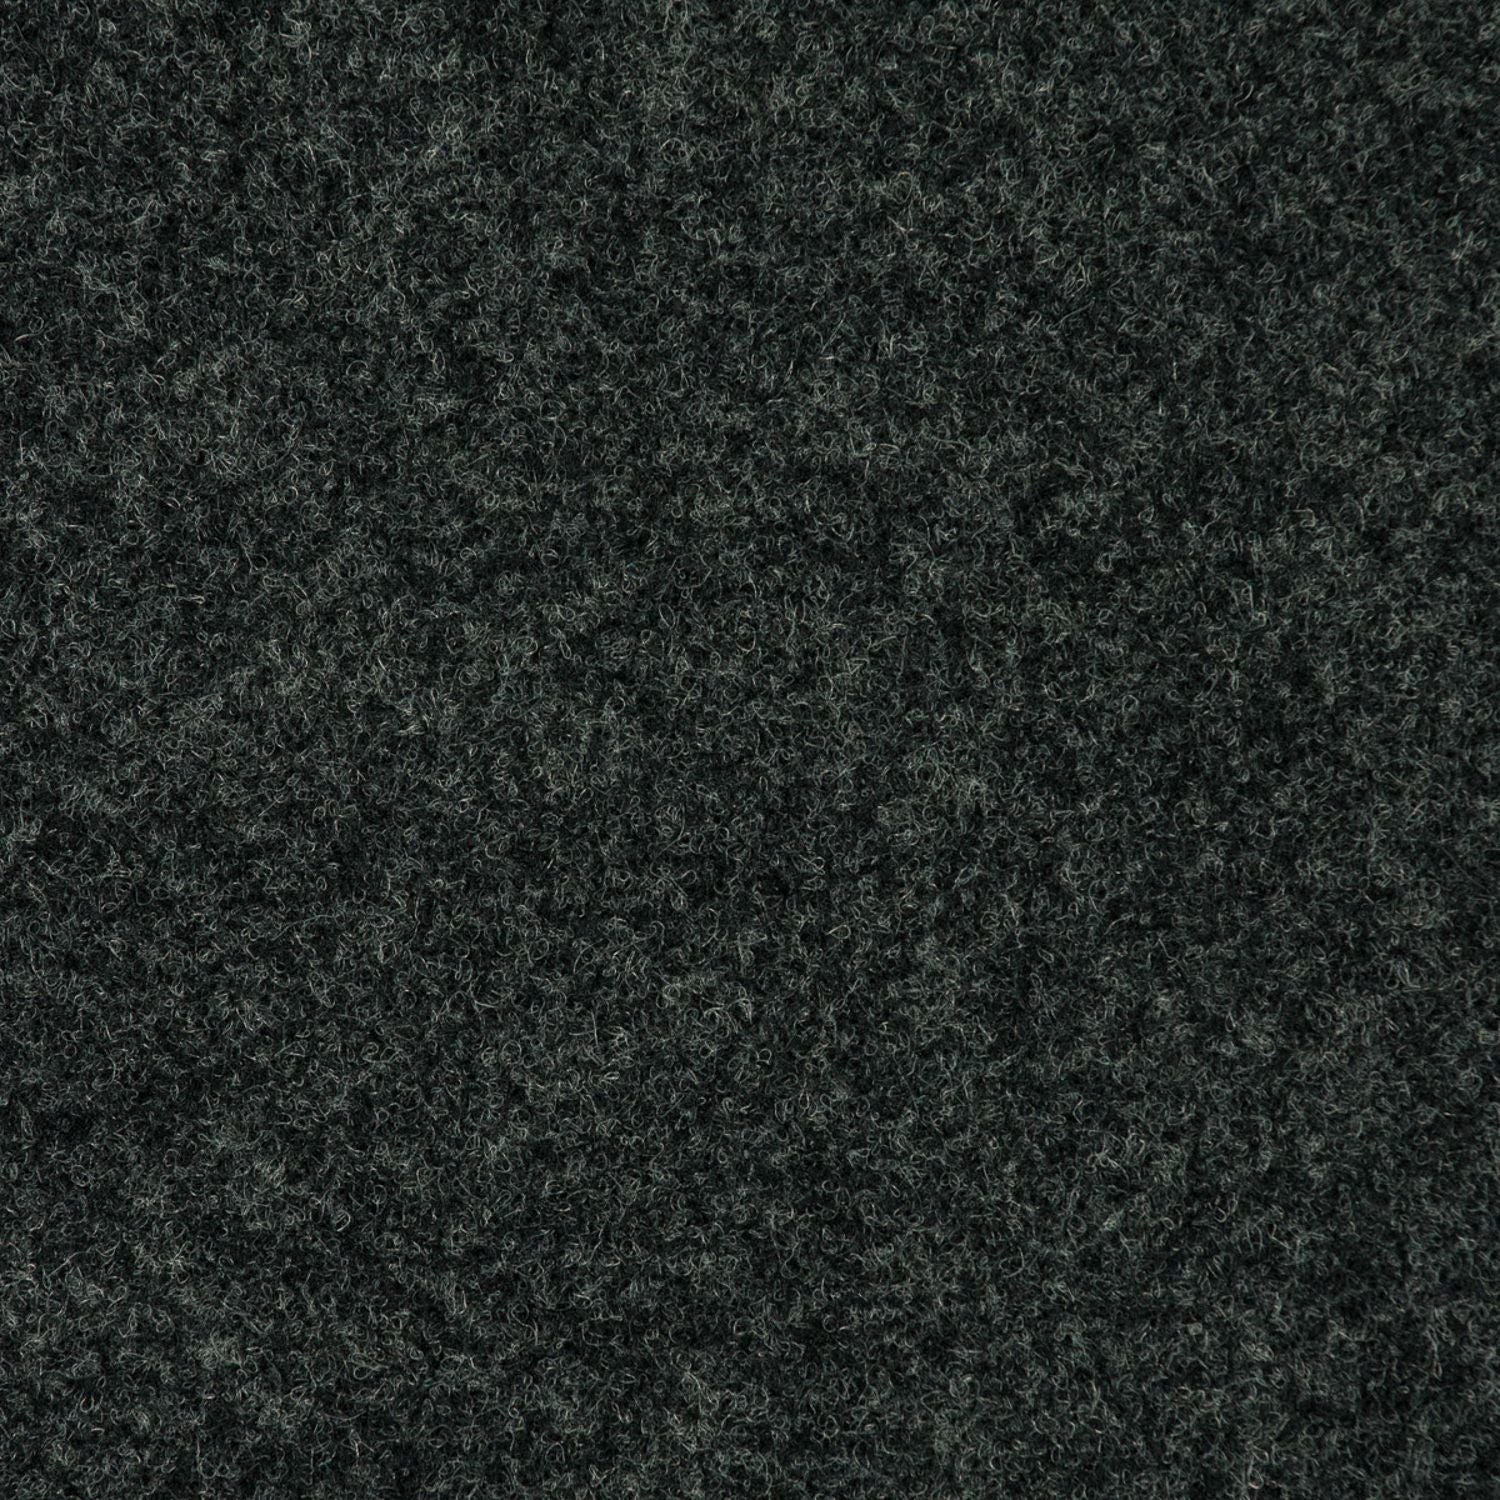 Carpet Color Swatch